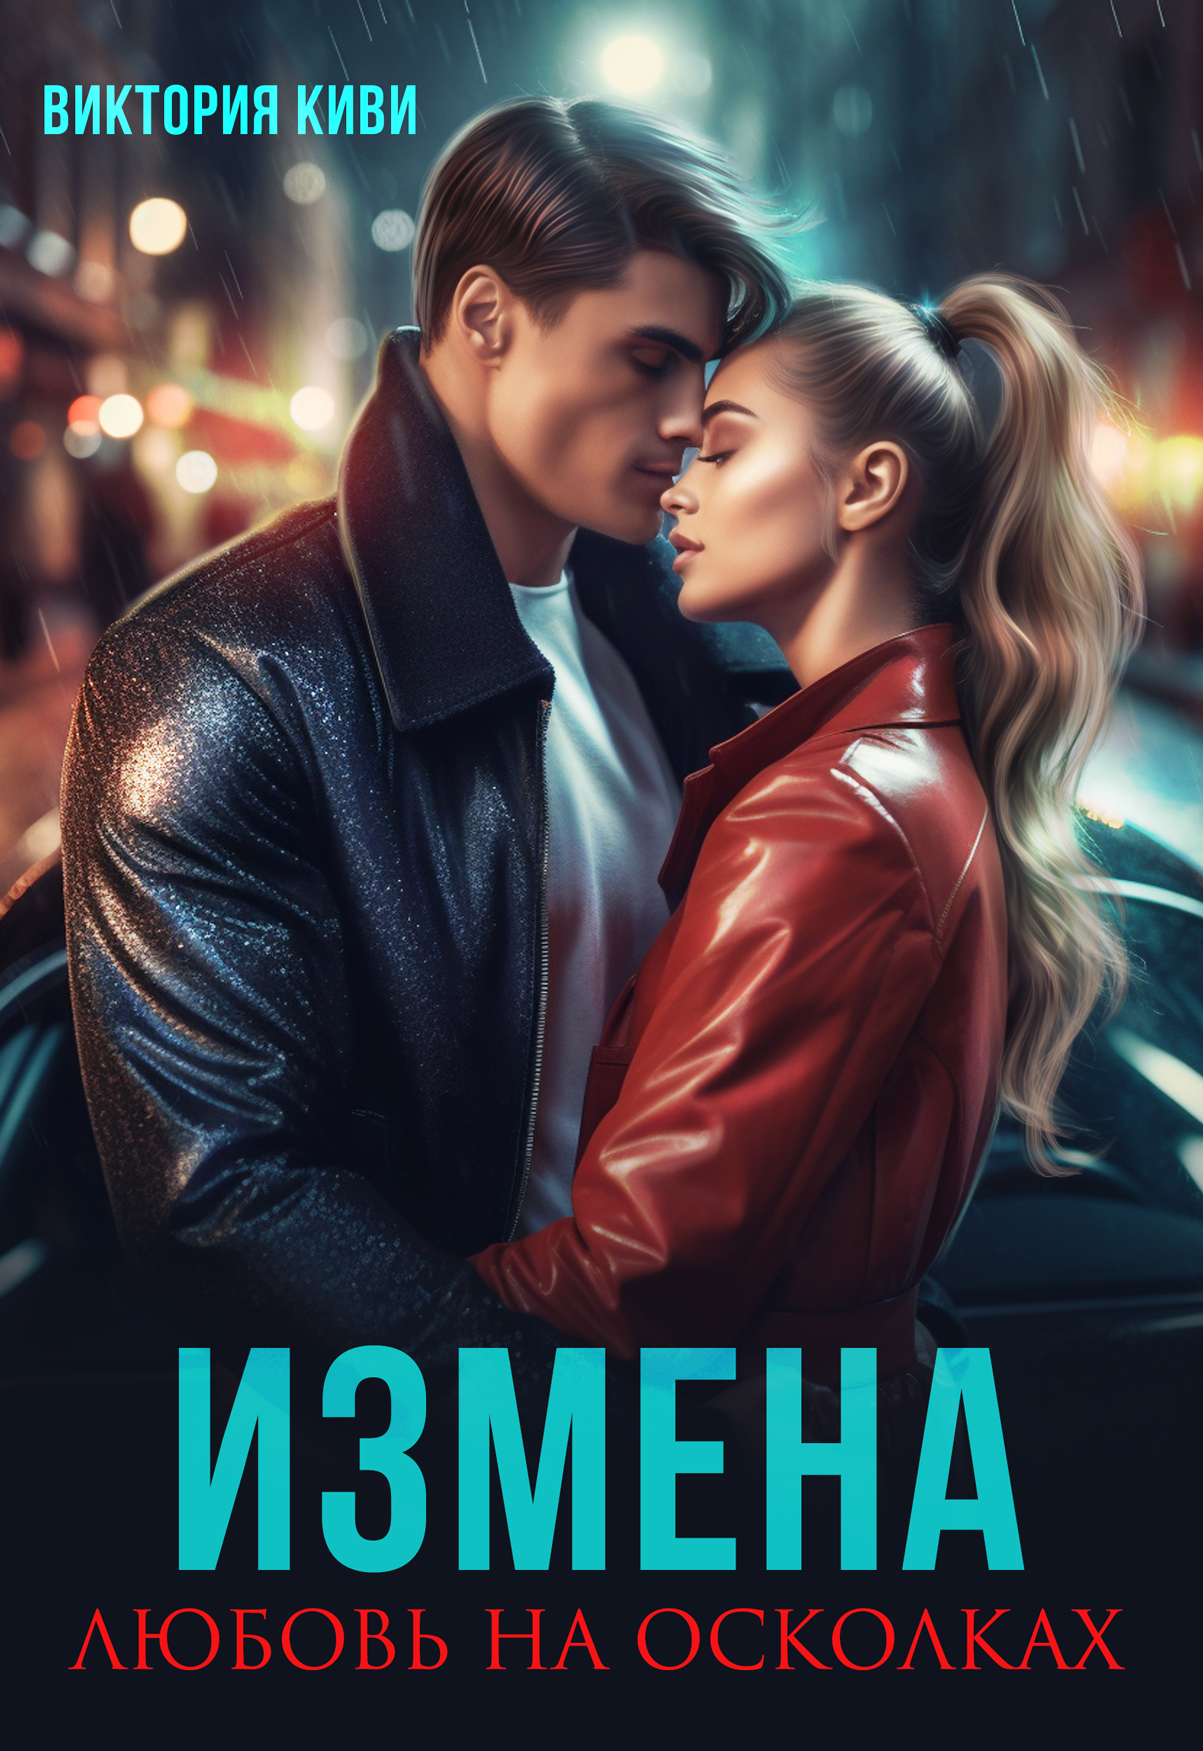 Читать российские романы измены. Любовь и измена. Книги про измены и любовь романы.